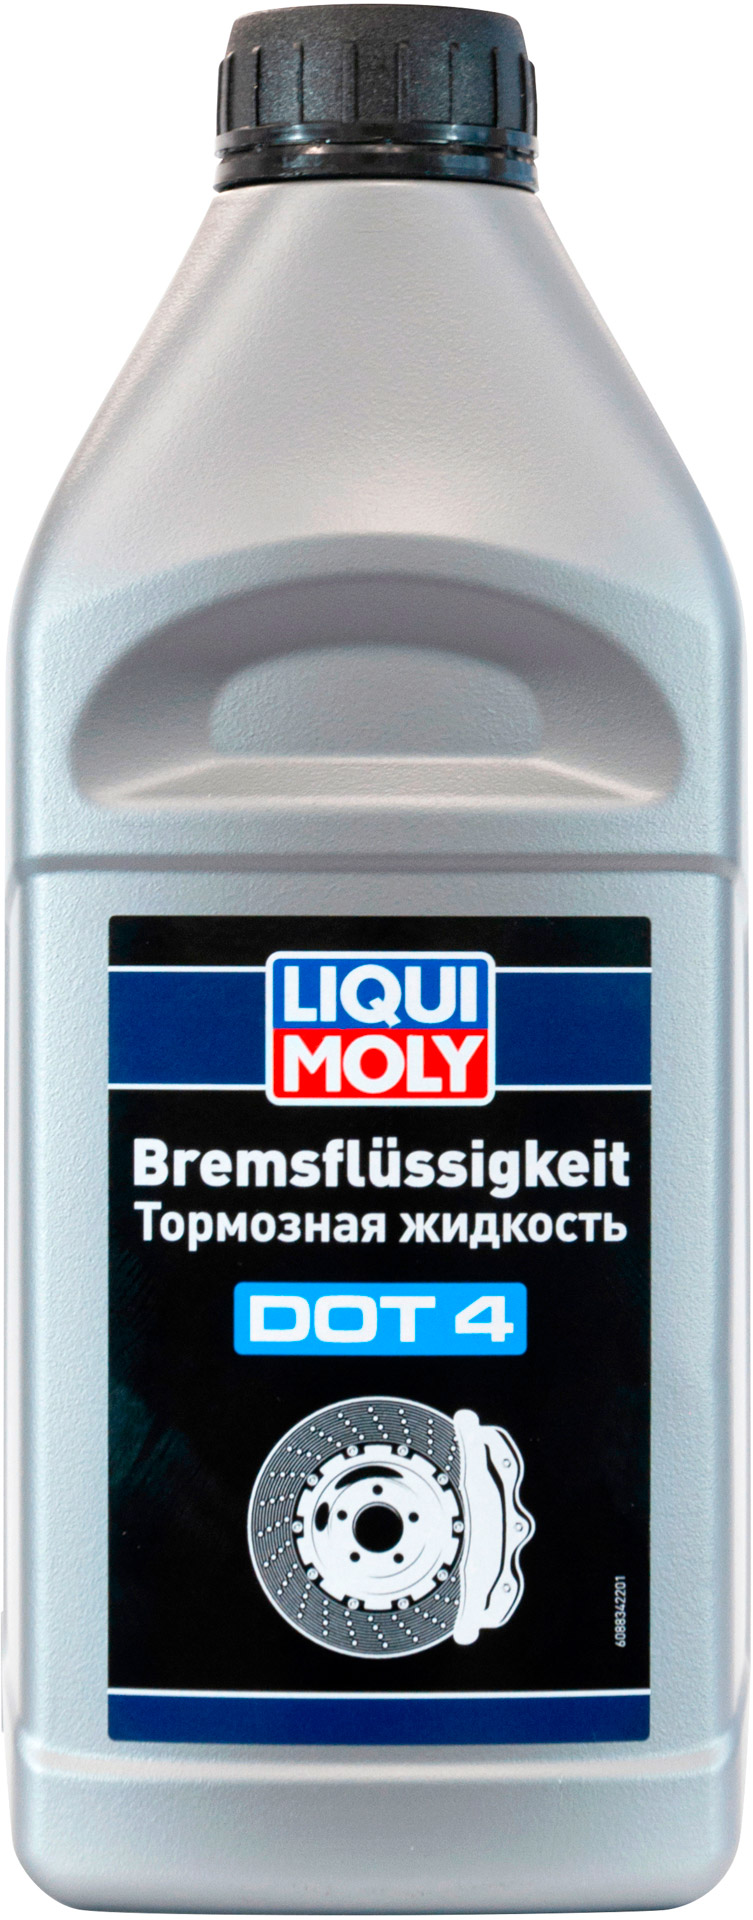 Тормозная жидкость Liqui Moly Bremsflussigkeit DOT 4 1л